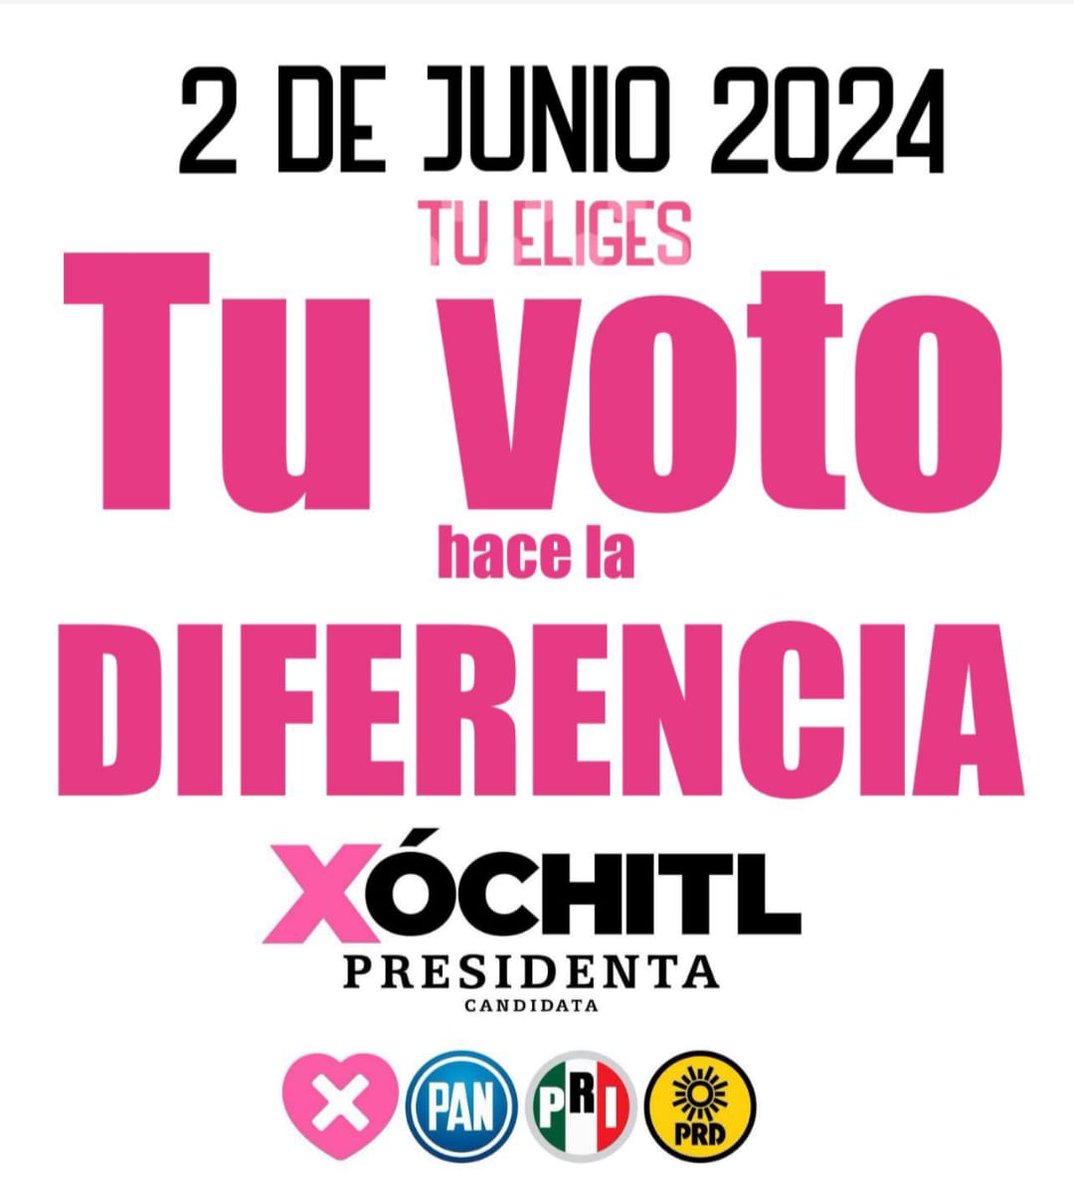 @OscarAthie @XochitlGalvez Todos a las urnas. No hay pretexto ni excusa, ni lluvia ni calor. En esas horas nos jugamos el futuro y la libertad, voto masivo a Xochitl y TODOS los candidatos de Fuerza y Corazón por México.